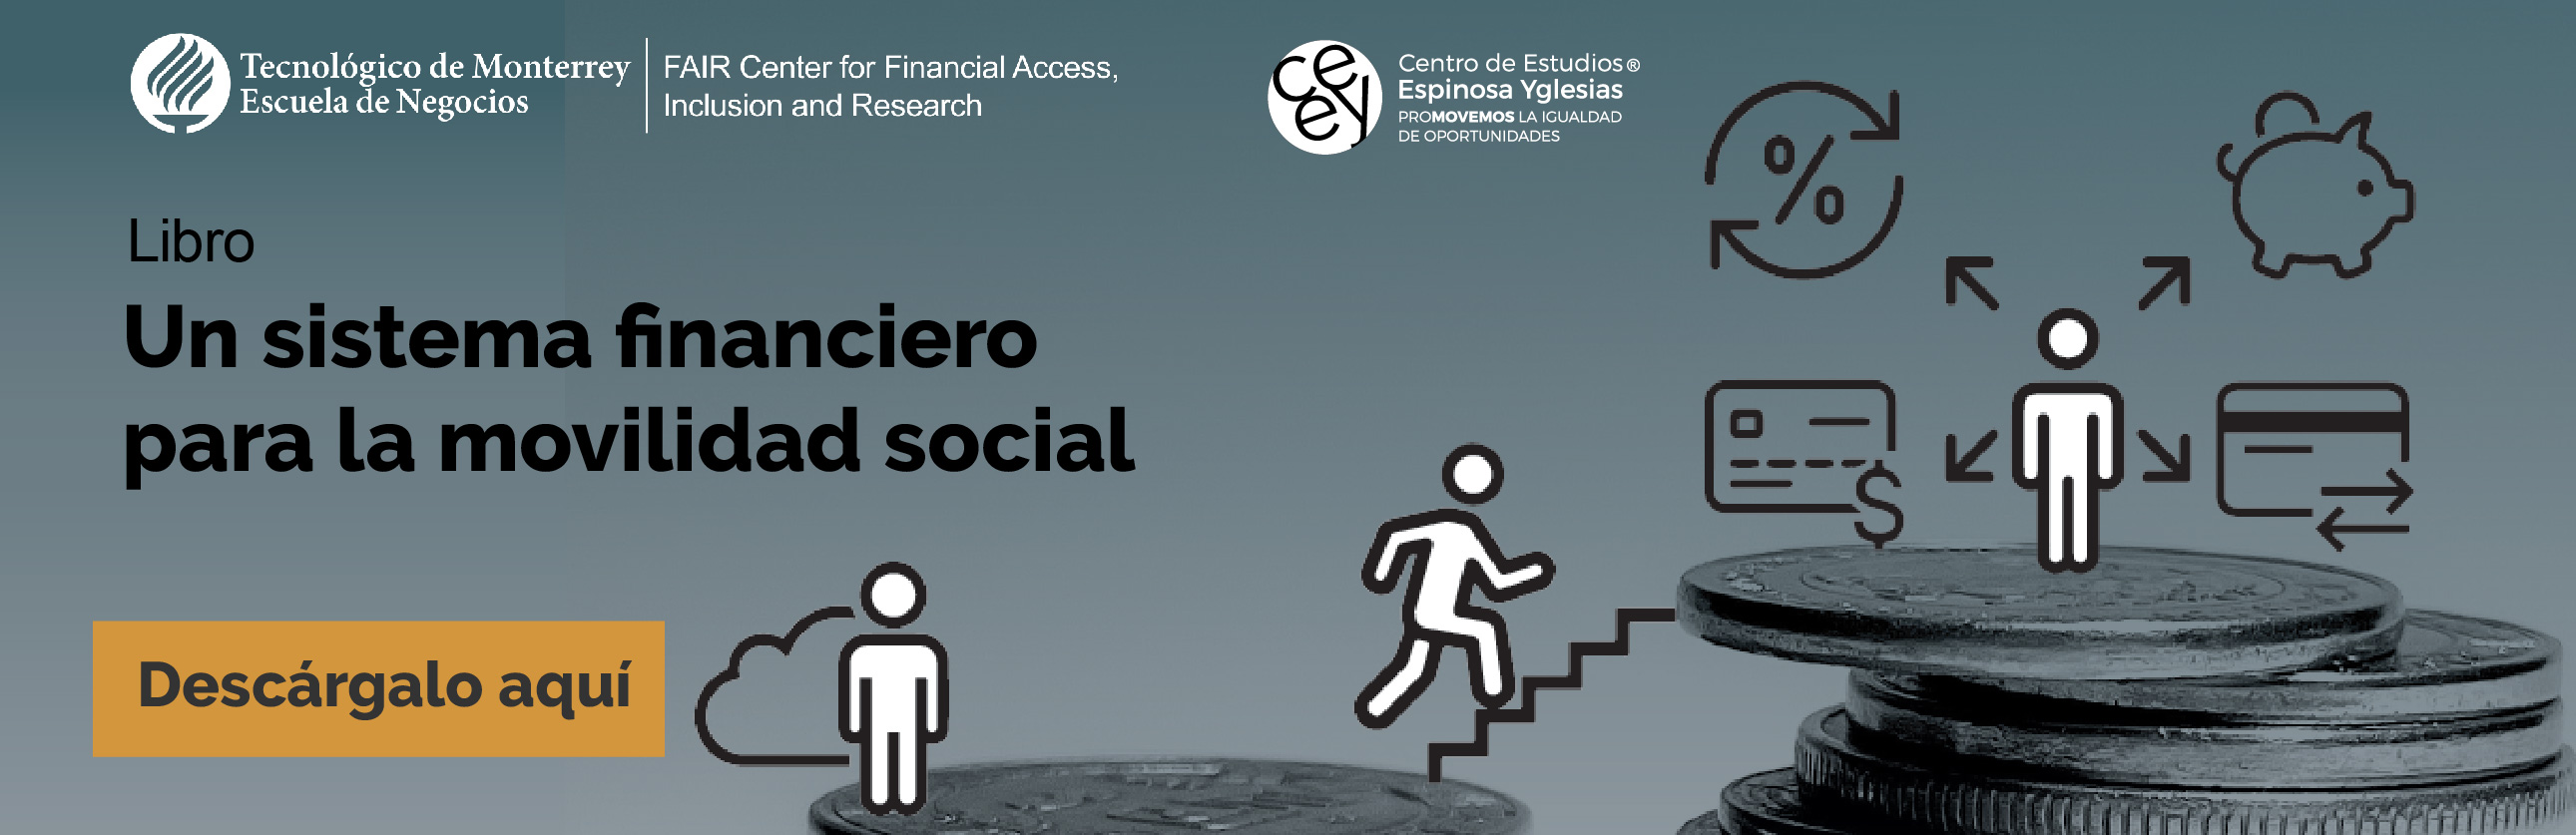 Descarga el libro Un sistema Financiero para la movilidad social - FAIR Center y Centro de Estudios Espinosa Yglesias